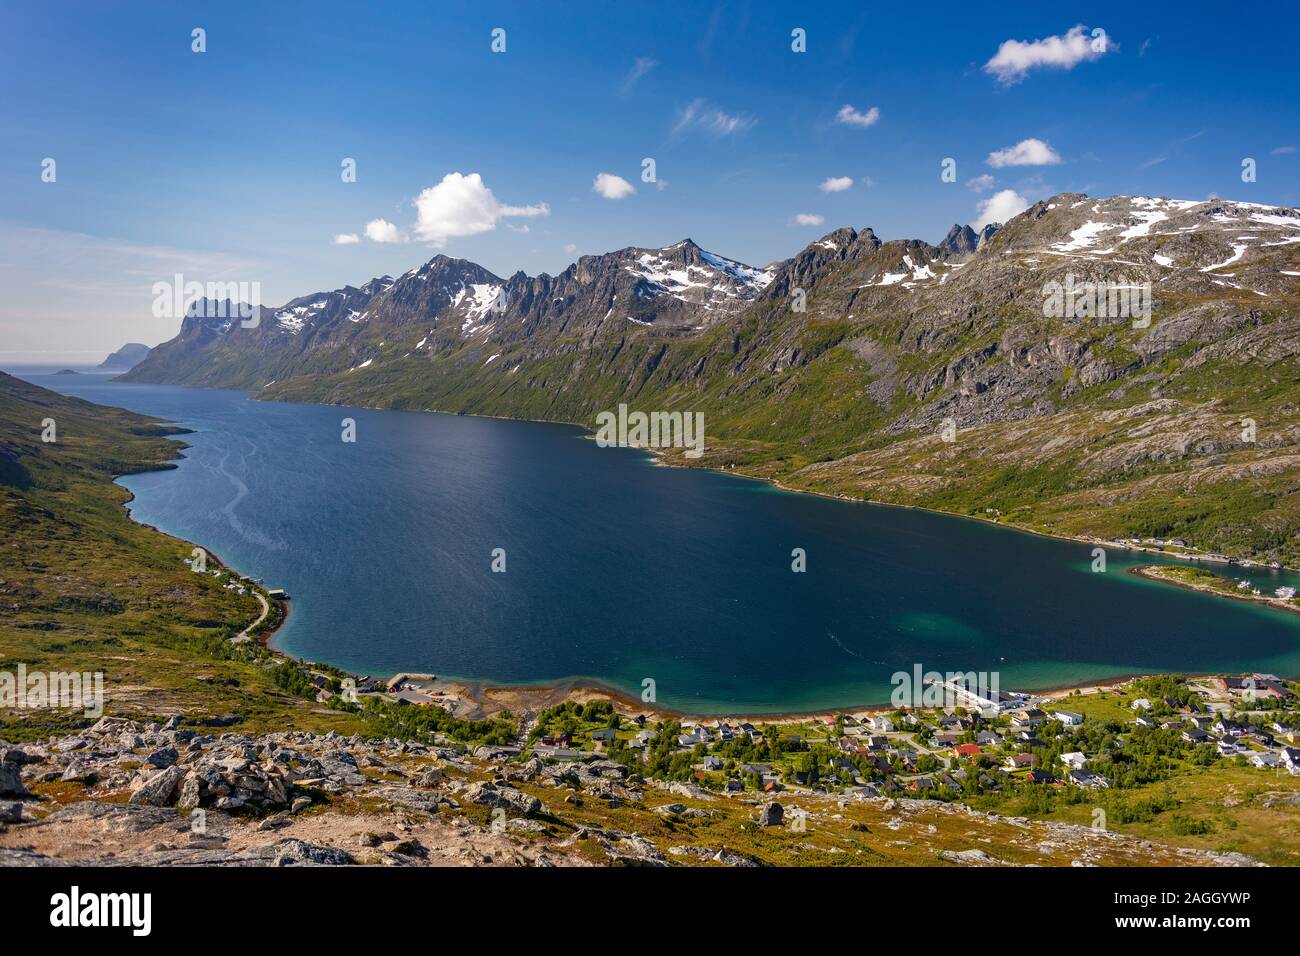 L'ÎLE DE KVALØYA, comté de Troms, NORVÈGE - Ersfjorden fjord et paysage de montagne dans le nord de la Norvège. Ersfjordbotn village bas à droite. Banque D'Images